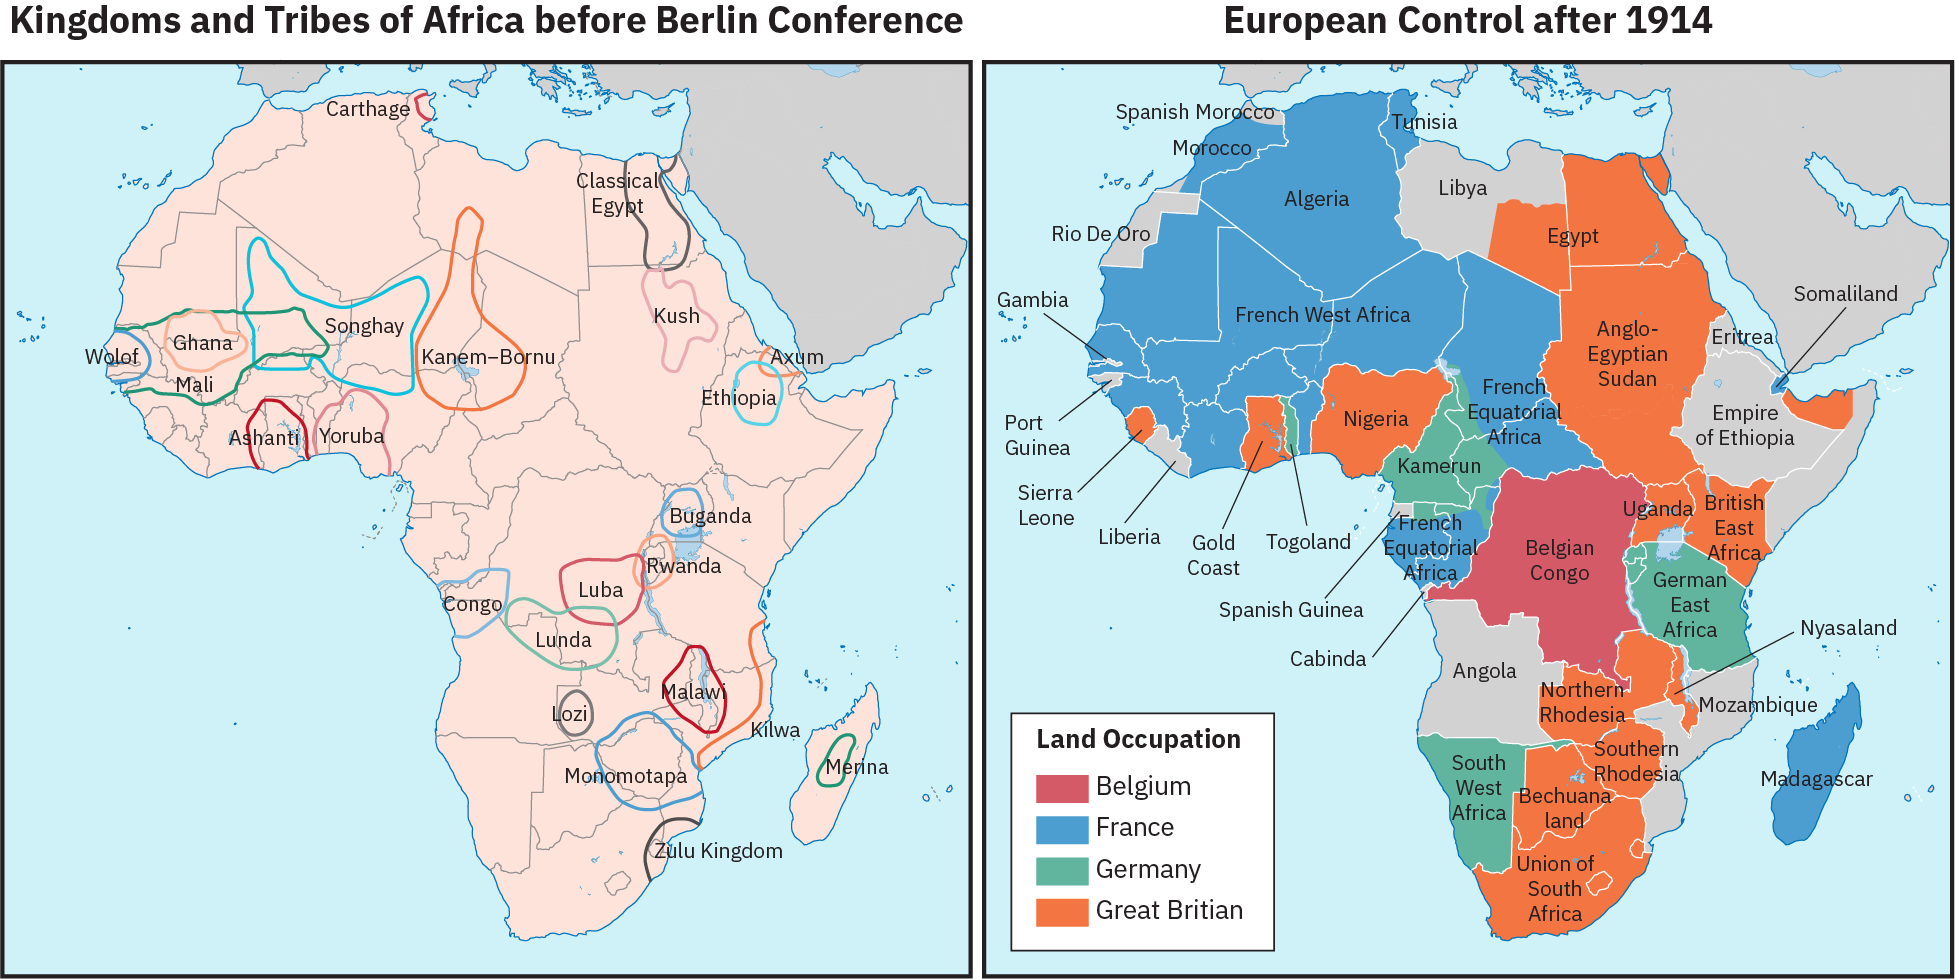 两张非洲地图，并排。 左边的地图标有 “柏林会议前的非洲王国和部落”。 各个领土都被圈起来，标有阿散蒂、古典埃及、马拉和祖鲁王国等政治实体的名称。 这些领土与当代的州界不一致。 第二张地图标有 “1914 年之后的欧洲控制”。 这张地图显示了比利时、法国、德国或英国占领的土地区域，这些区域确实与当代国家边界一致。